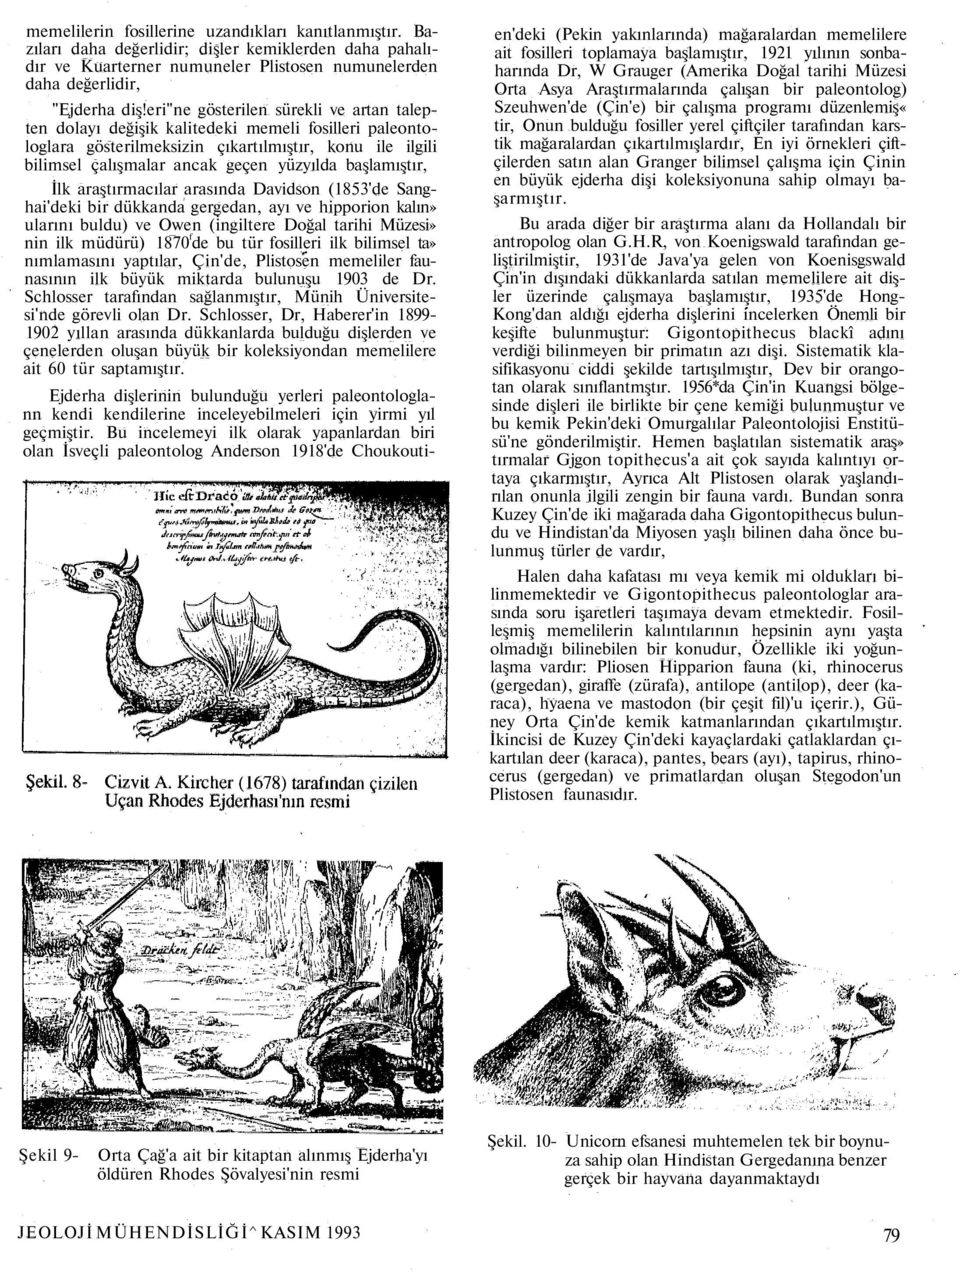 başlamıştır, İlk araştırmacılar arasında Davidson (1853'de Sanghai'deki bir dükkanda gergedan, ayı ve hipporion kalın» ularını buldu) ve Owen (ingiltere Doğal tarihi Müzesi» nin ilk müdürü) 1870 f de